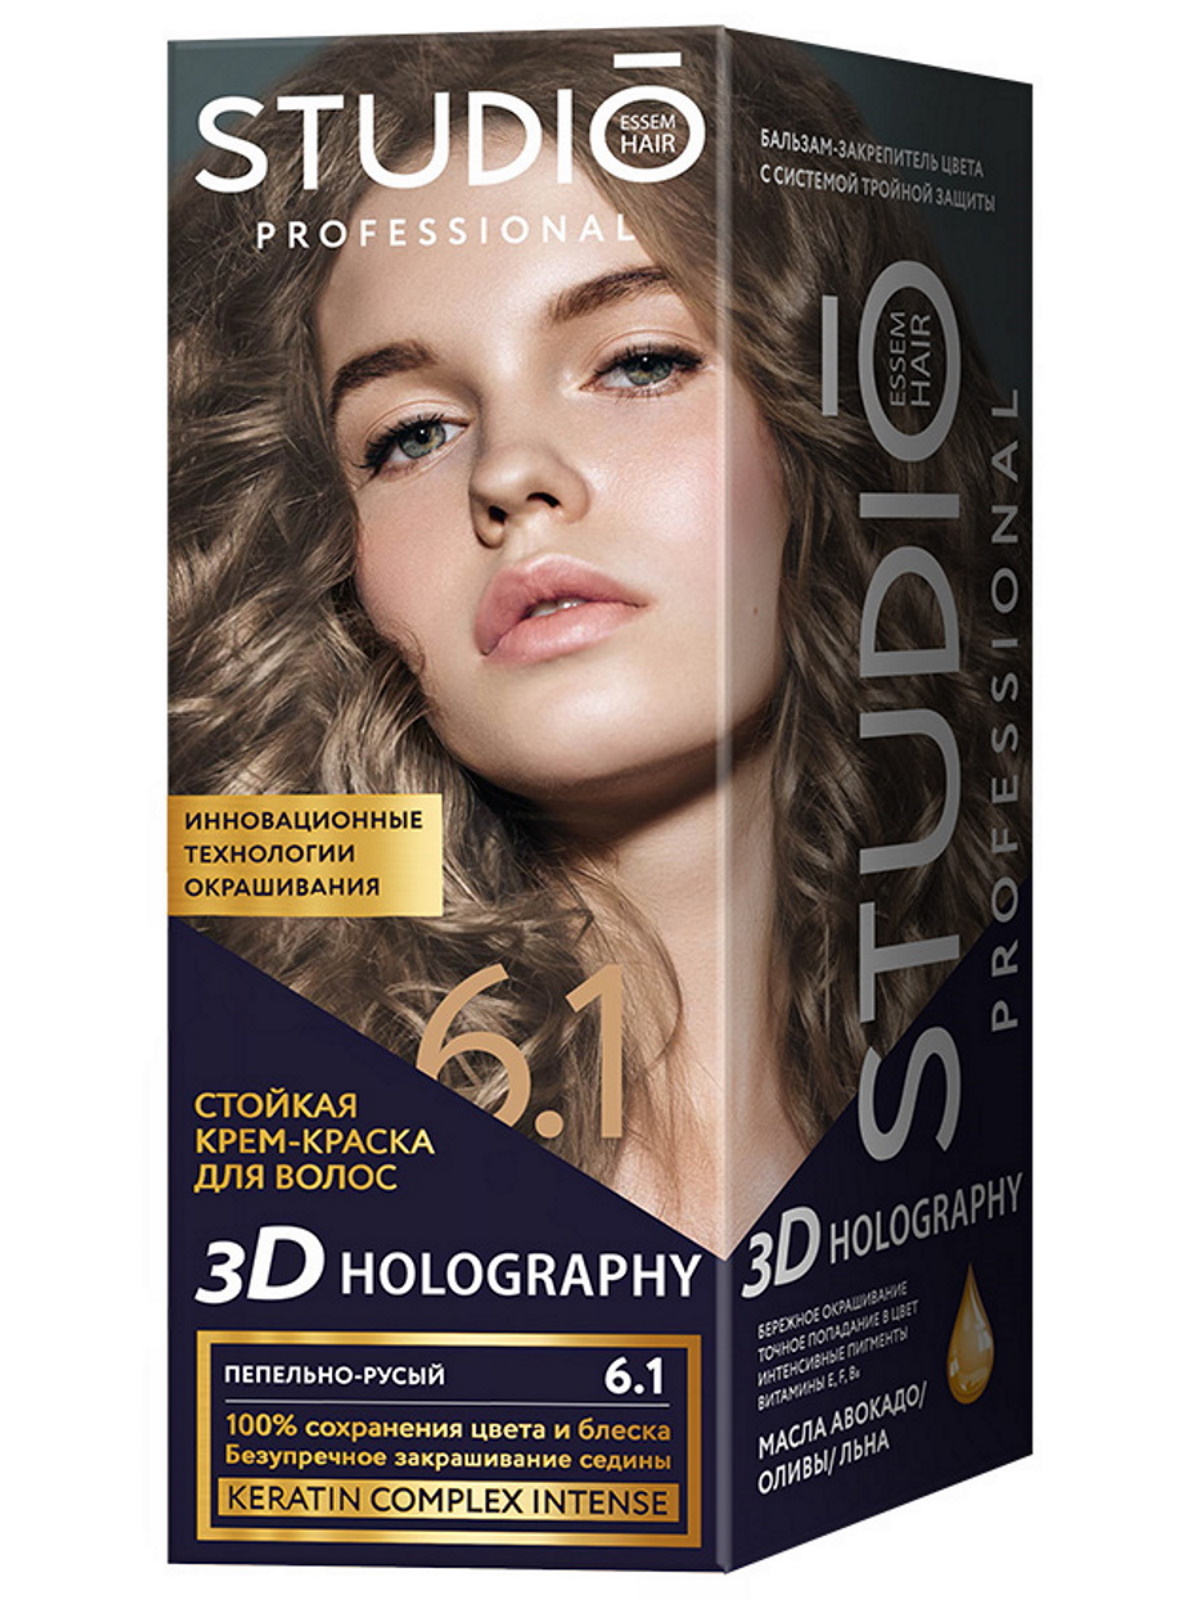 Комплект 3D HOLOGRAPHY STUDIO PROFESSIONAL 6.1 пепельно-русый 2*50+15 мл